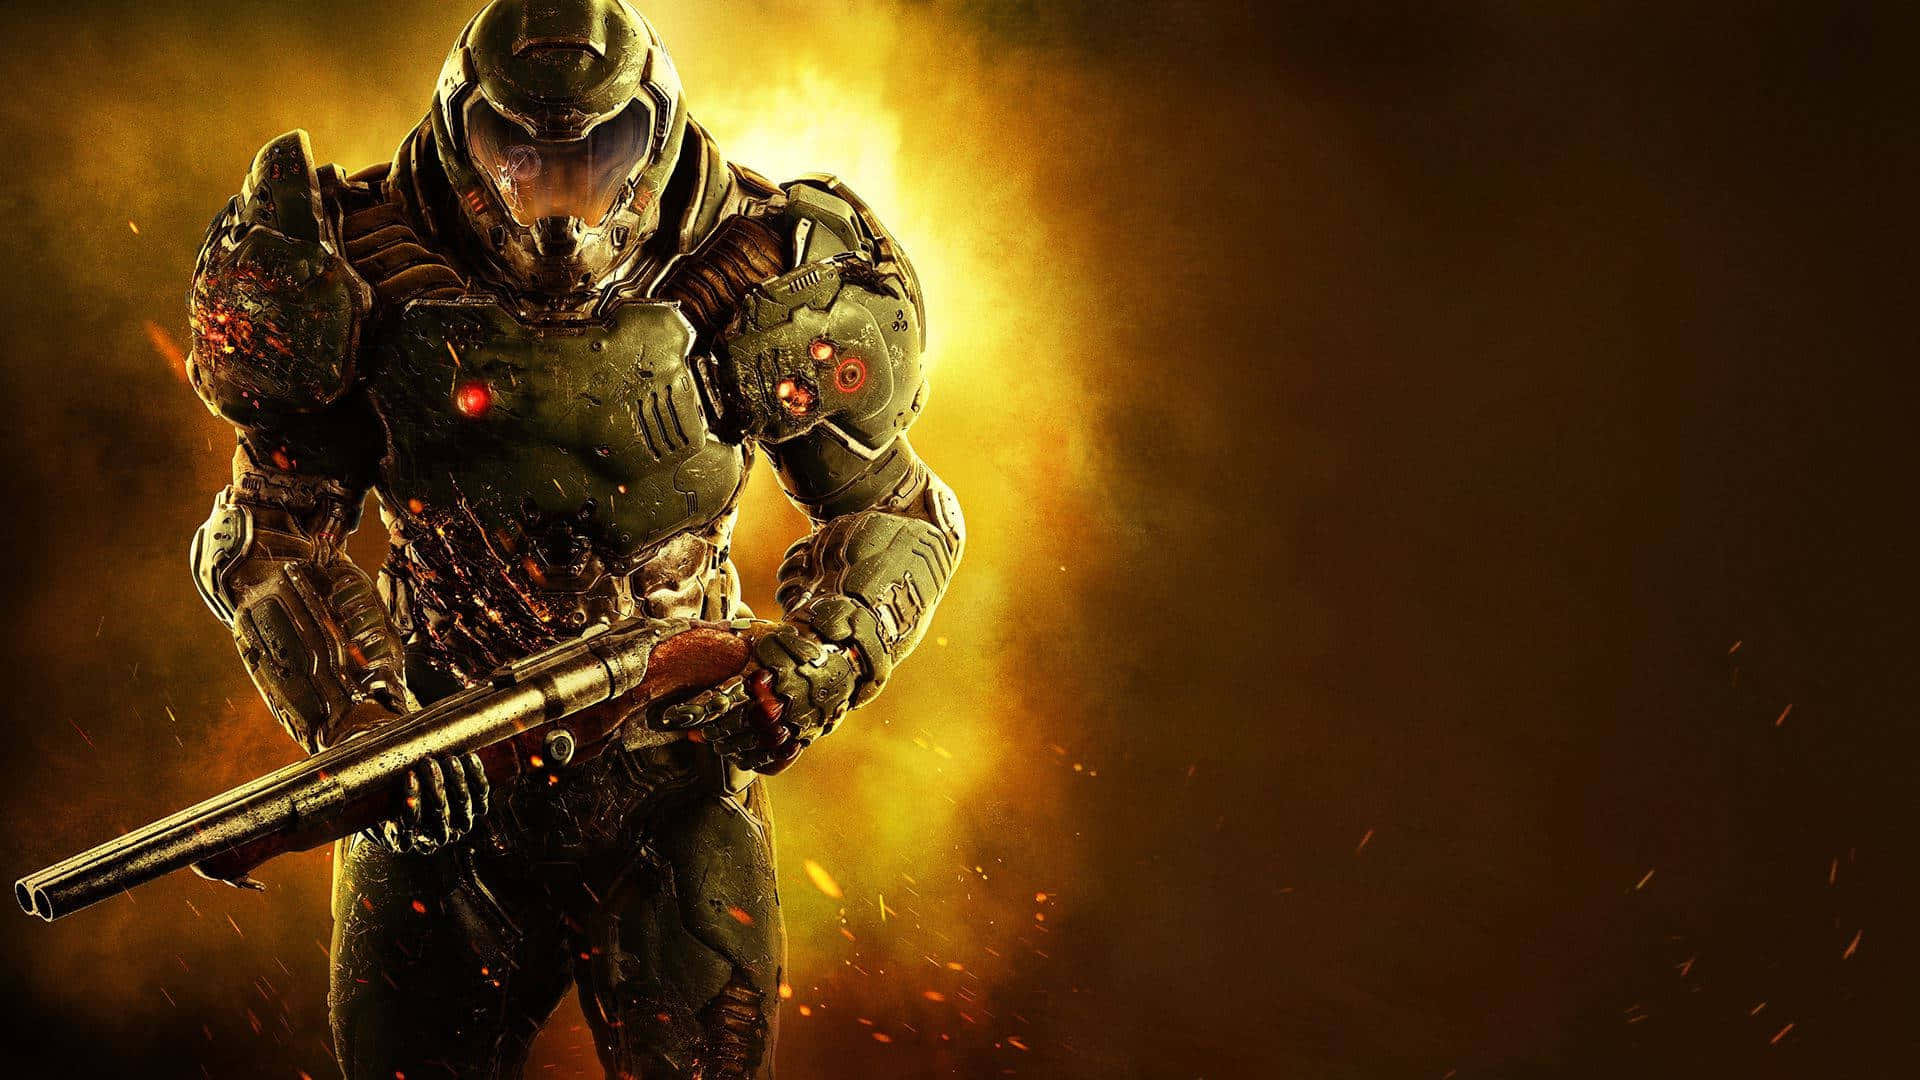 Doom Slayer In Armored Suit Wallpaper